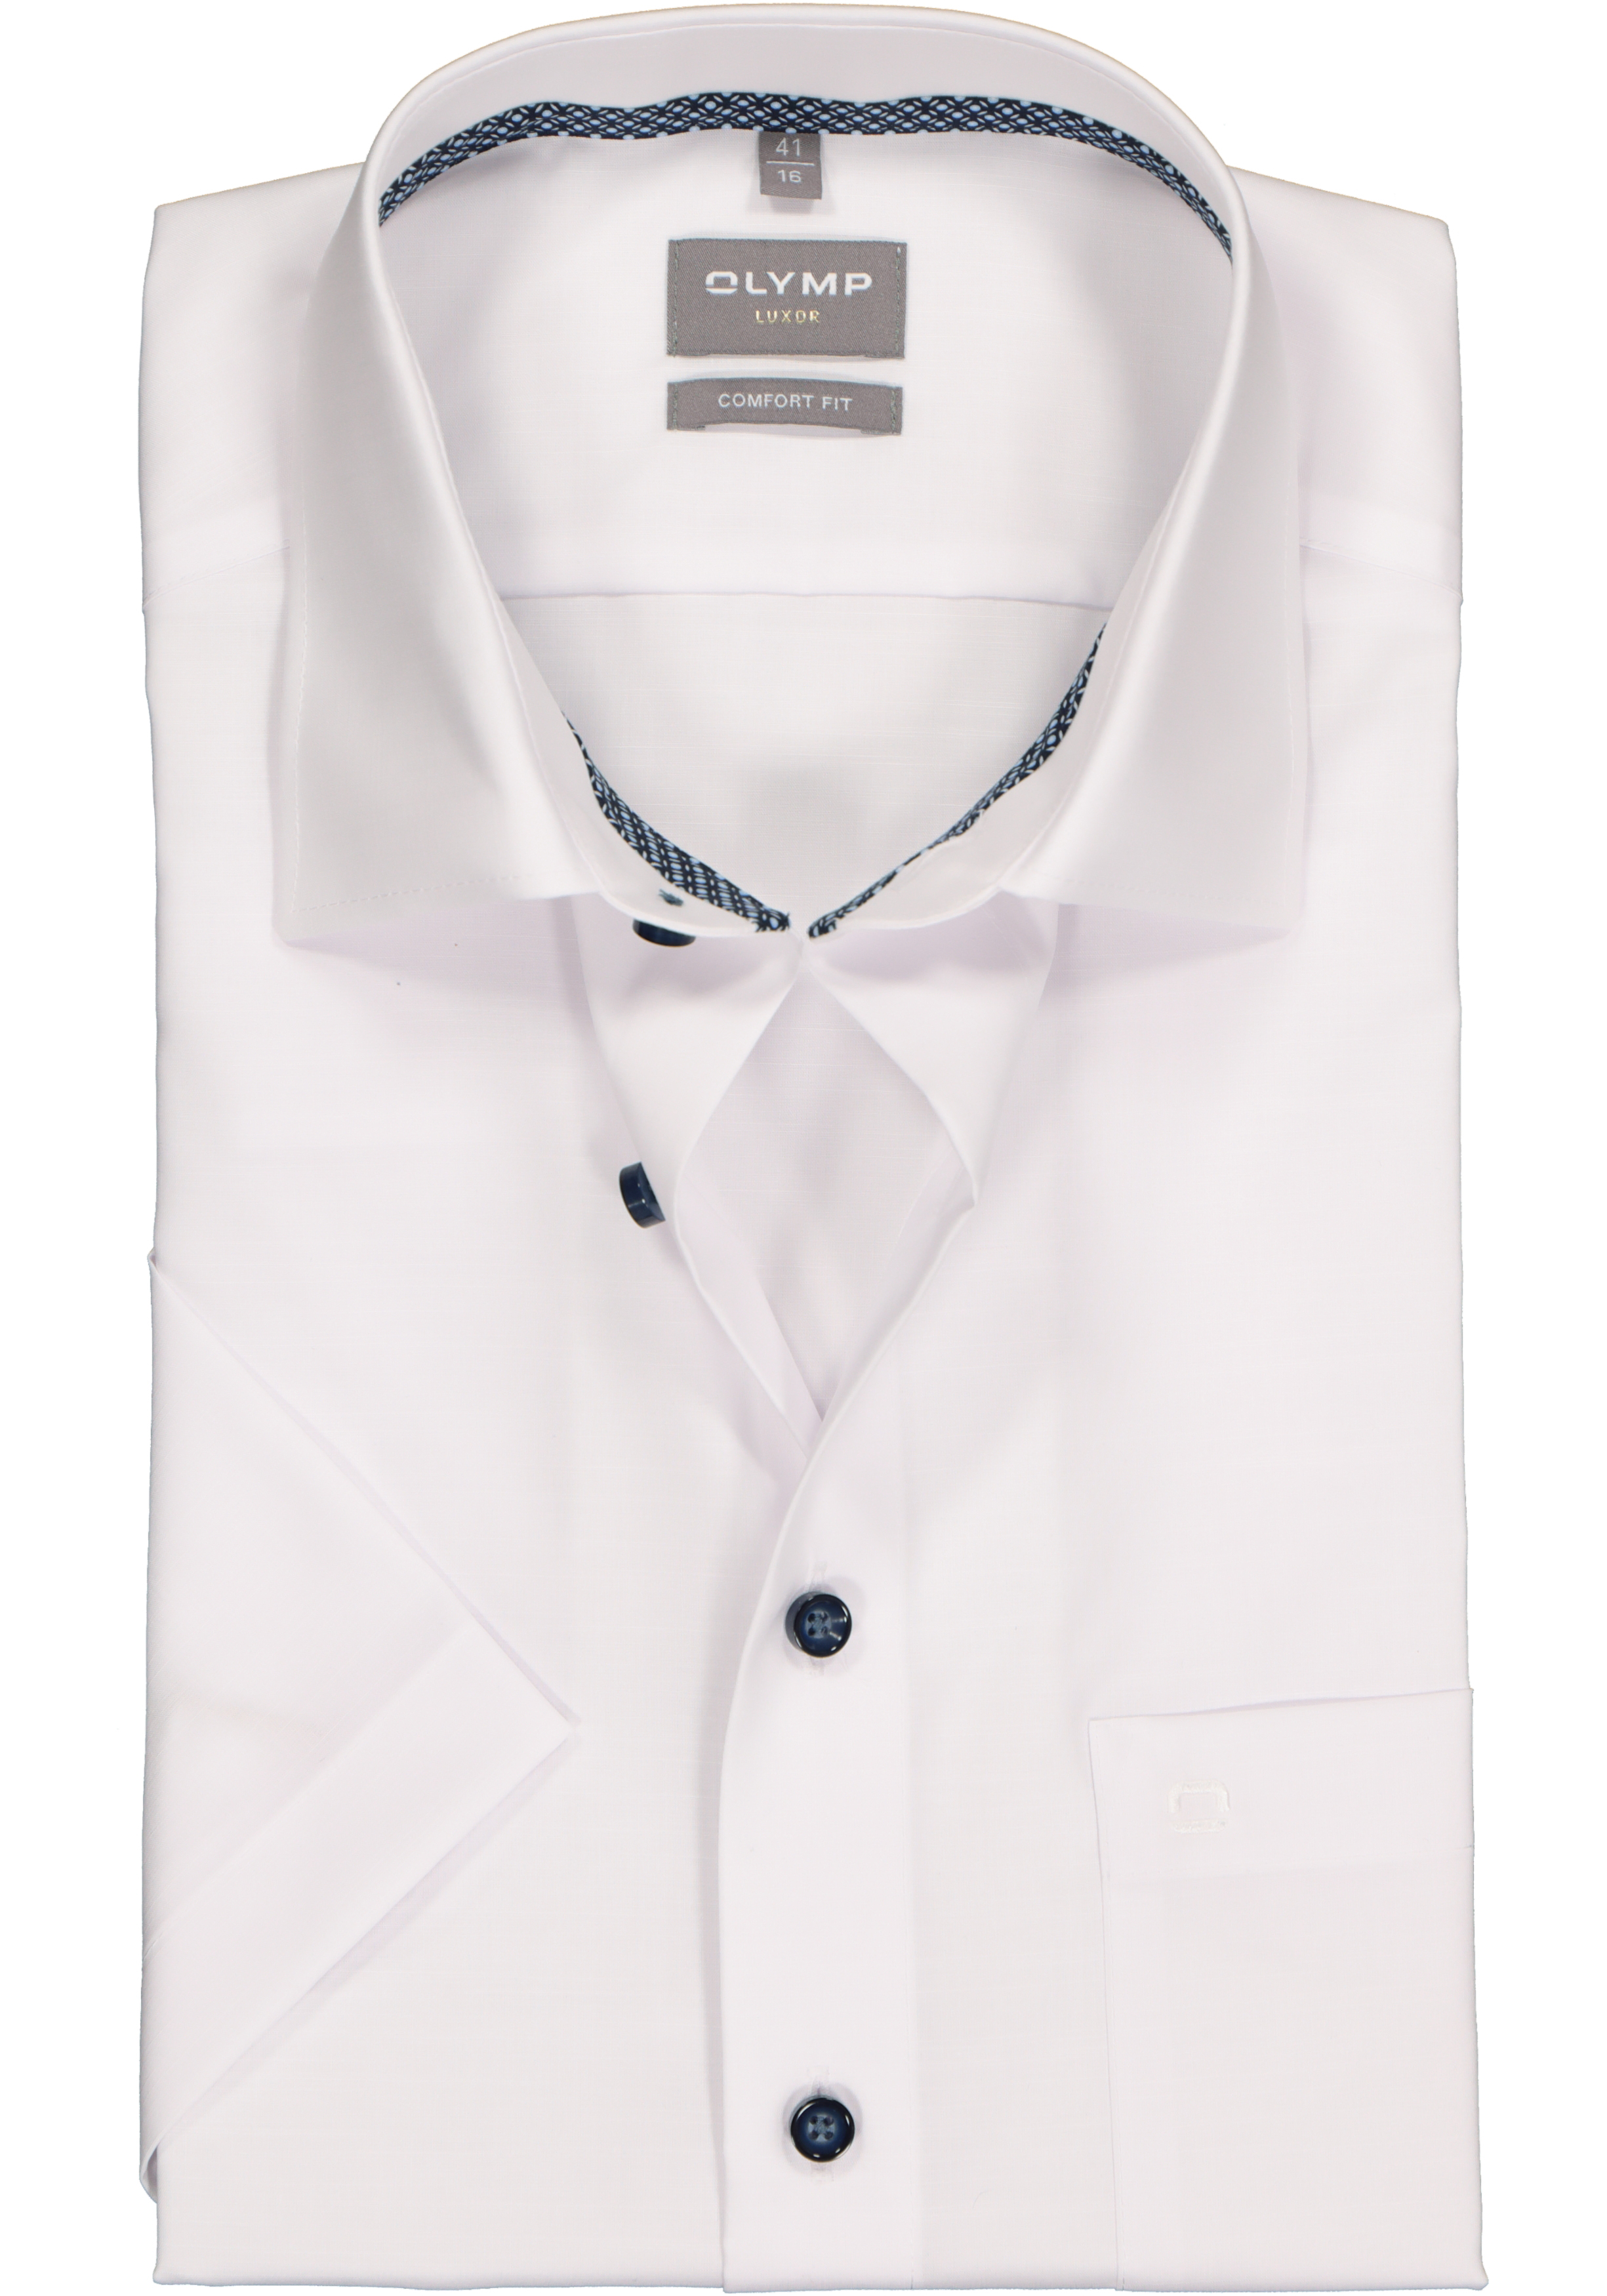 OLYMP comfort fit overhemd, korte mouw, structuur, wit (contrast)